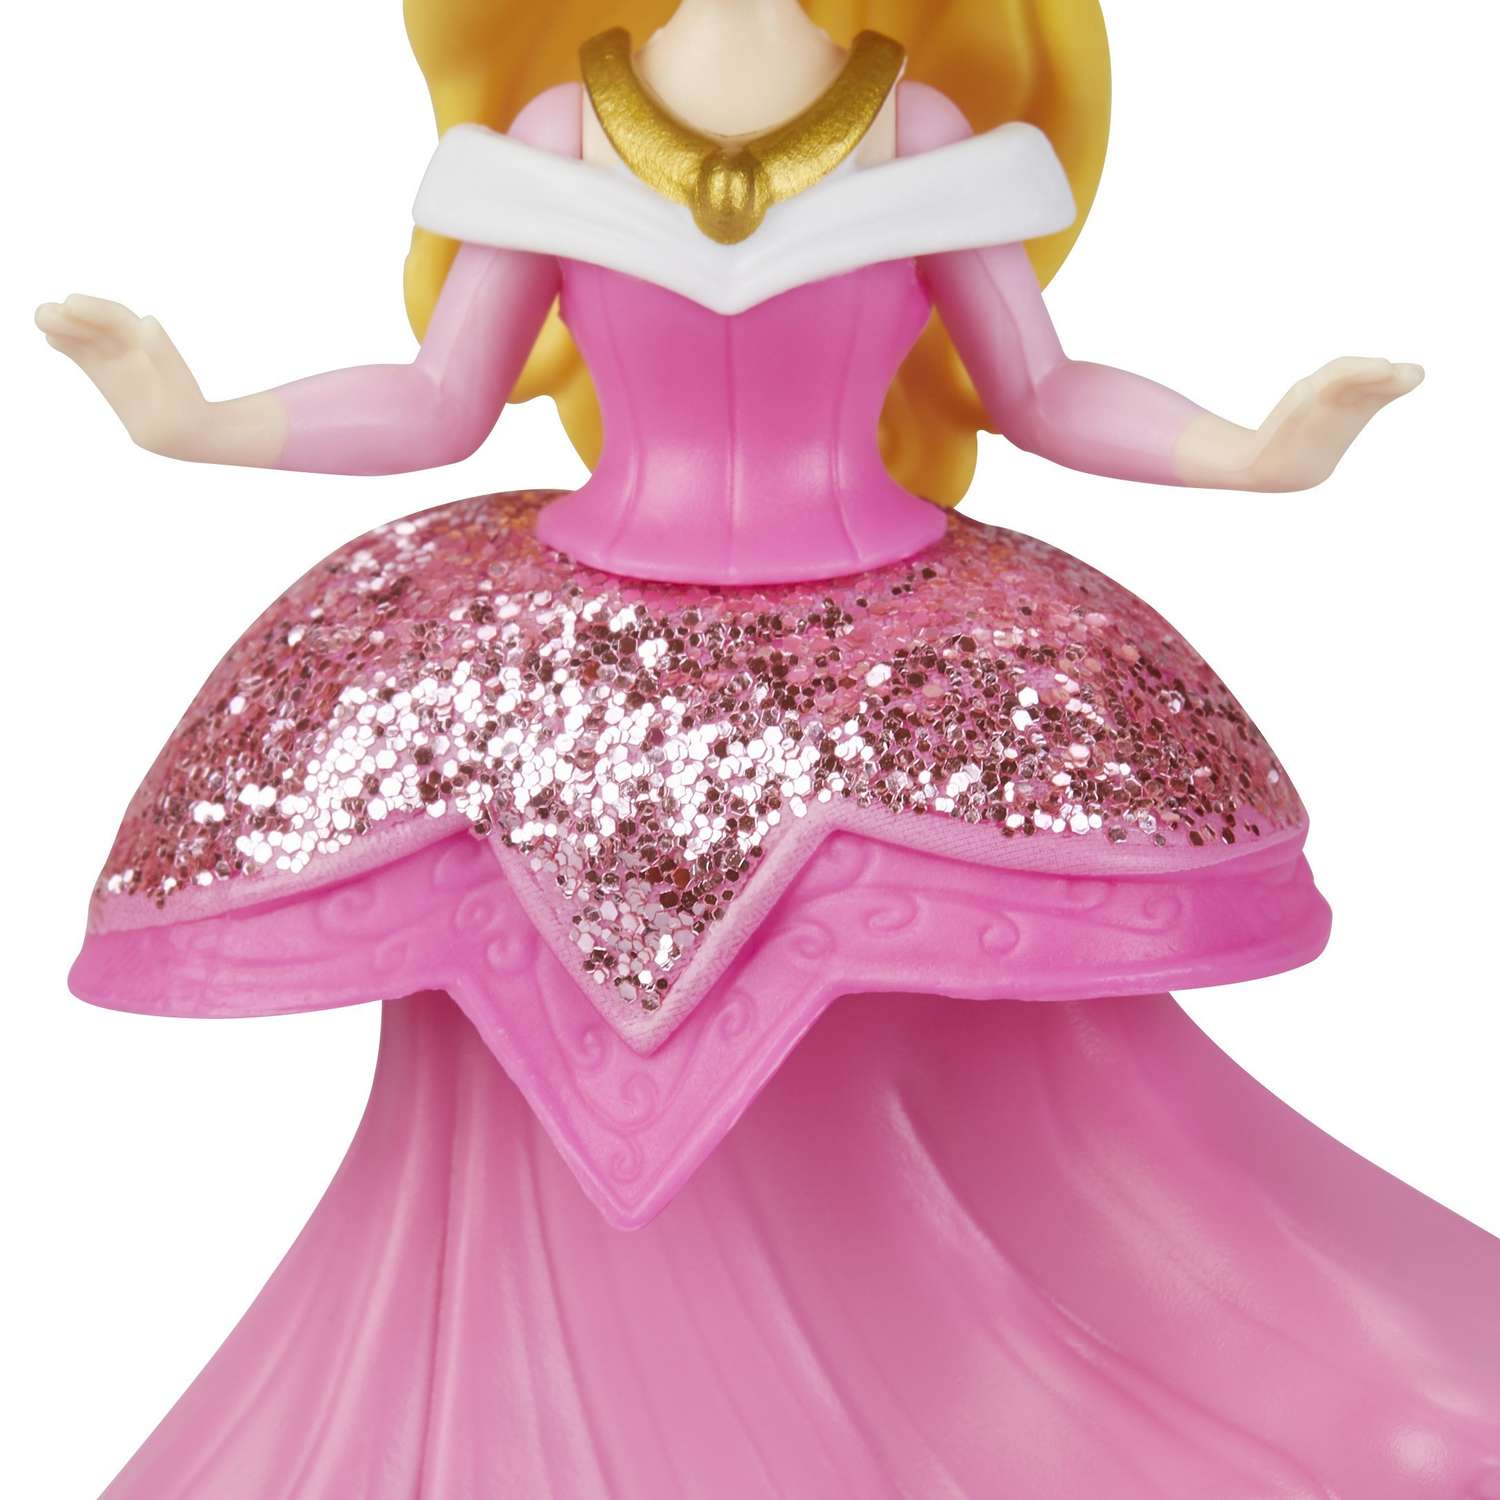 Фигурка Disney Princess Hasbro Принцессы Аврора E3087EU4 E3049EU4 - фото 7